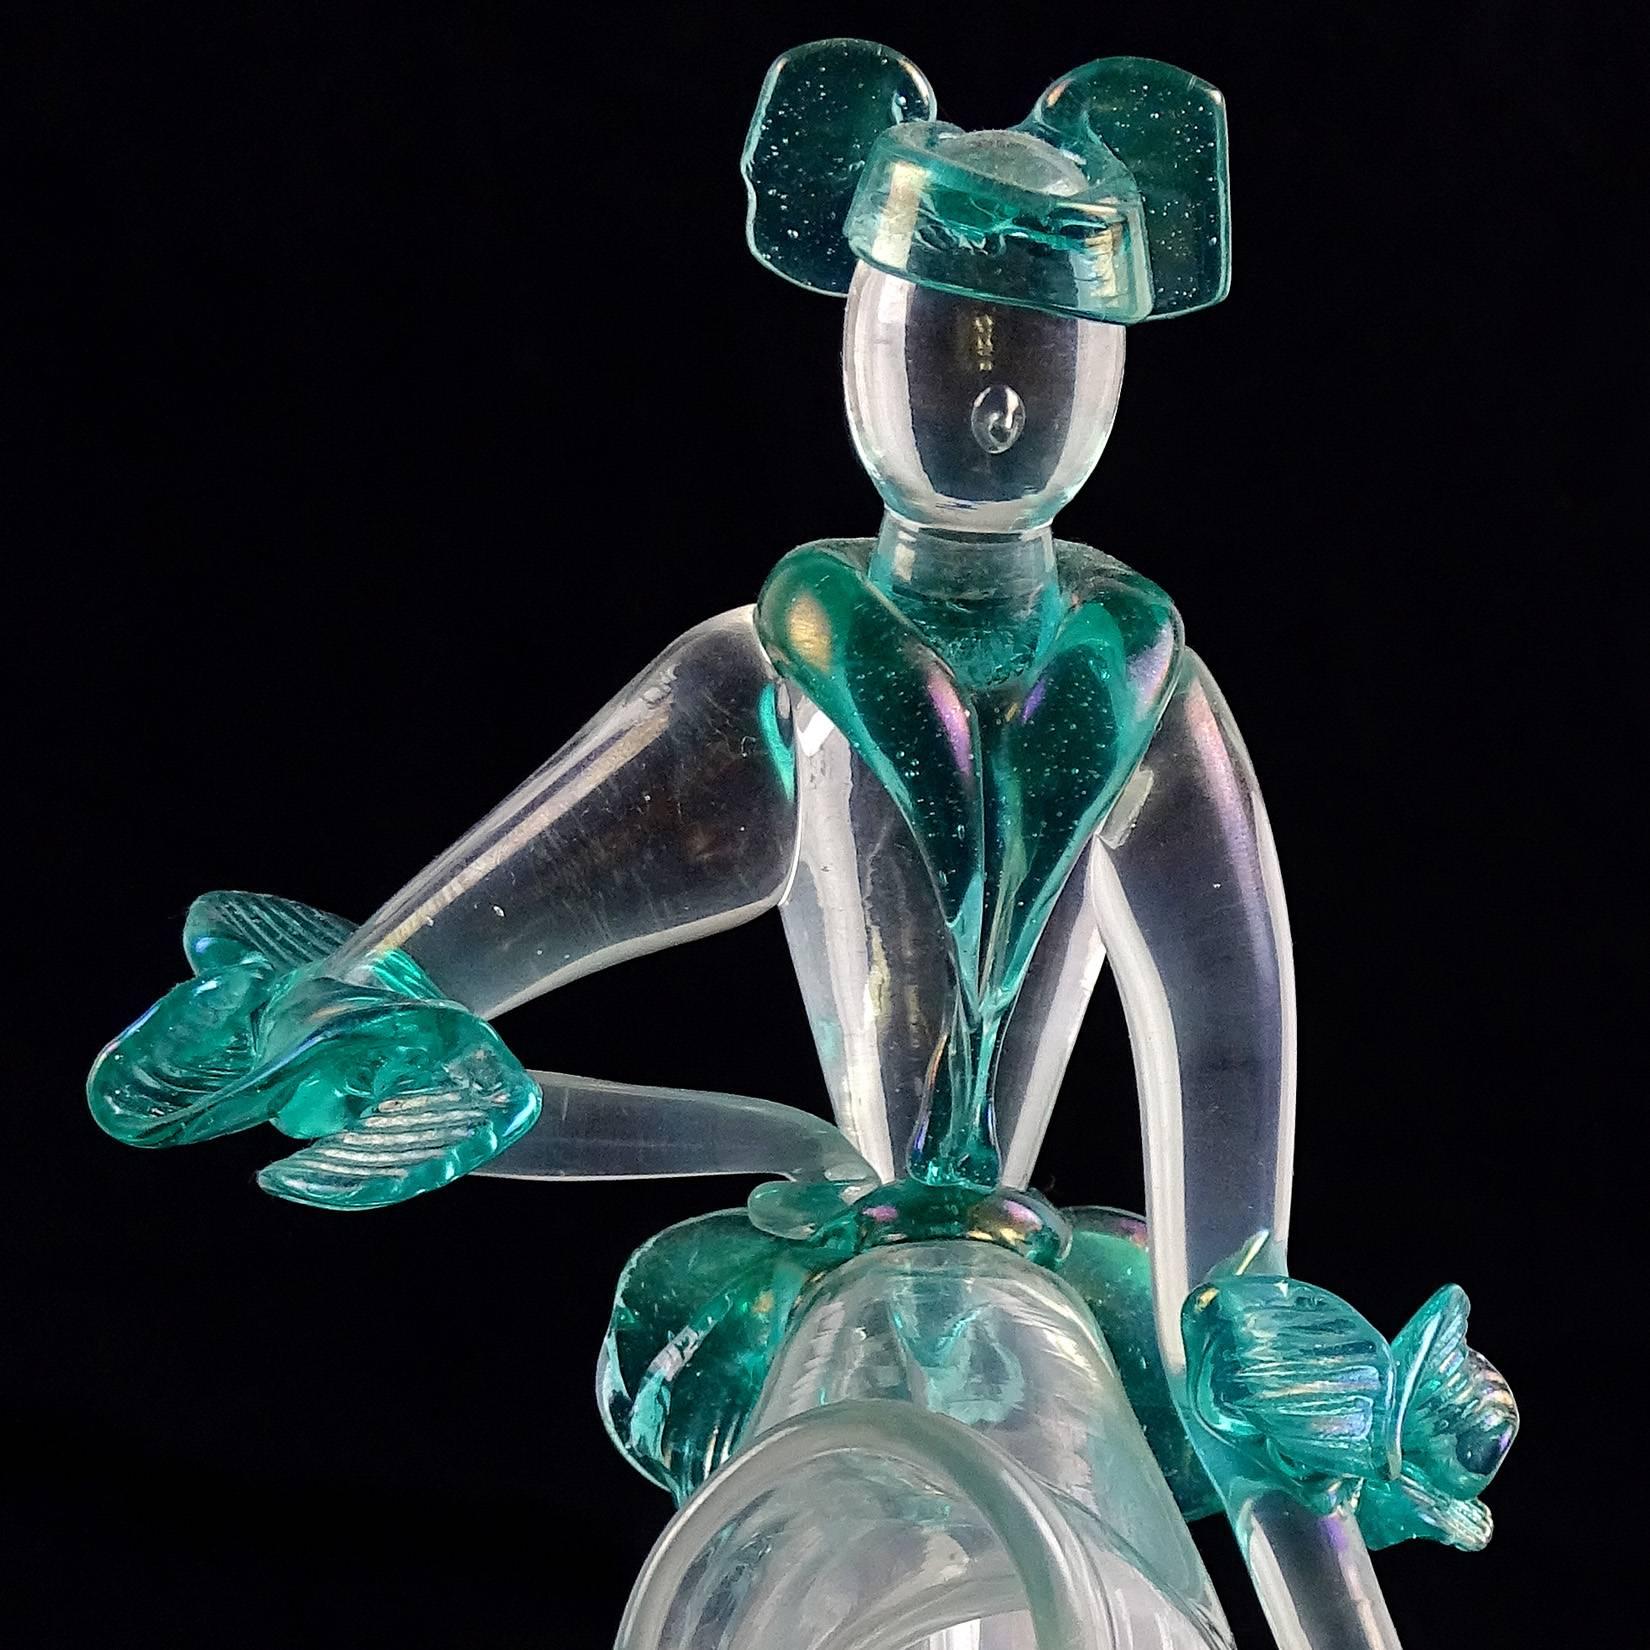 Art Deco Flavio Poli Seguso Vetri d'Arte Murano Iridescent Italian Art Glass Sculpture For Sale